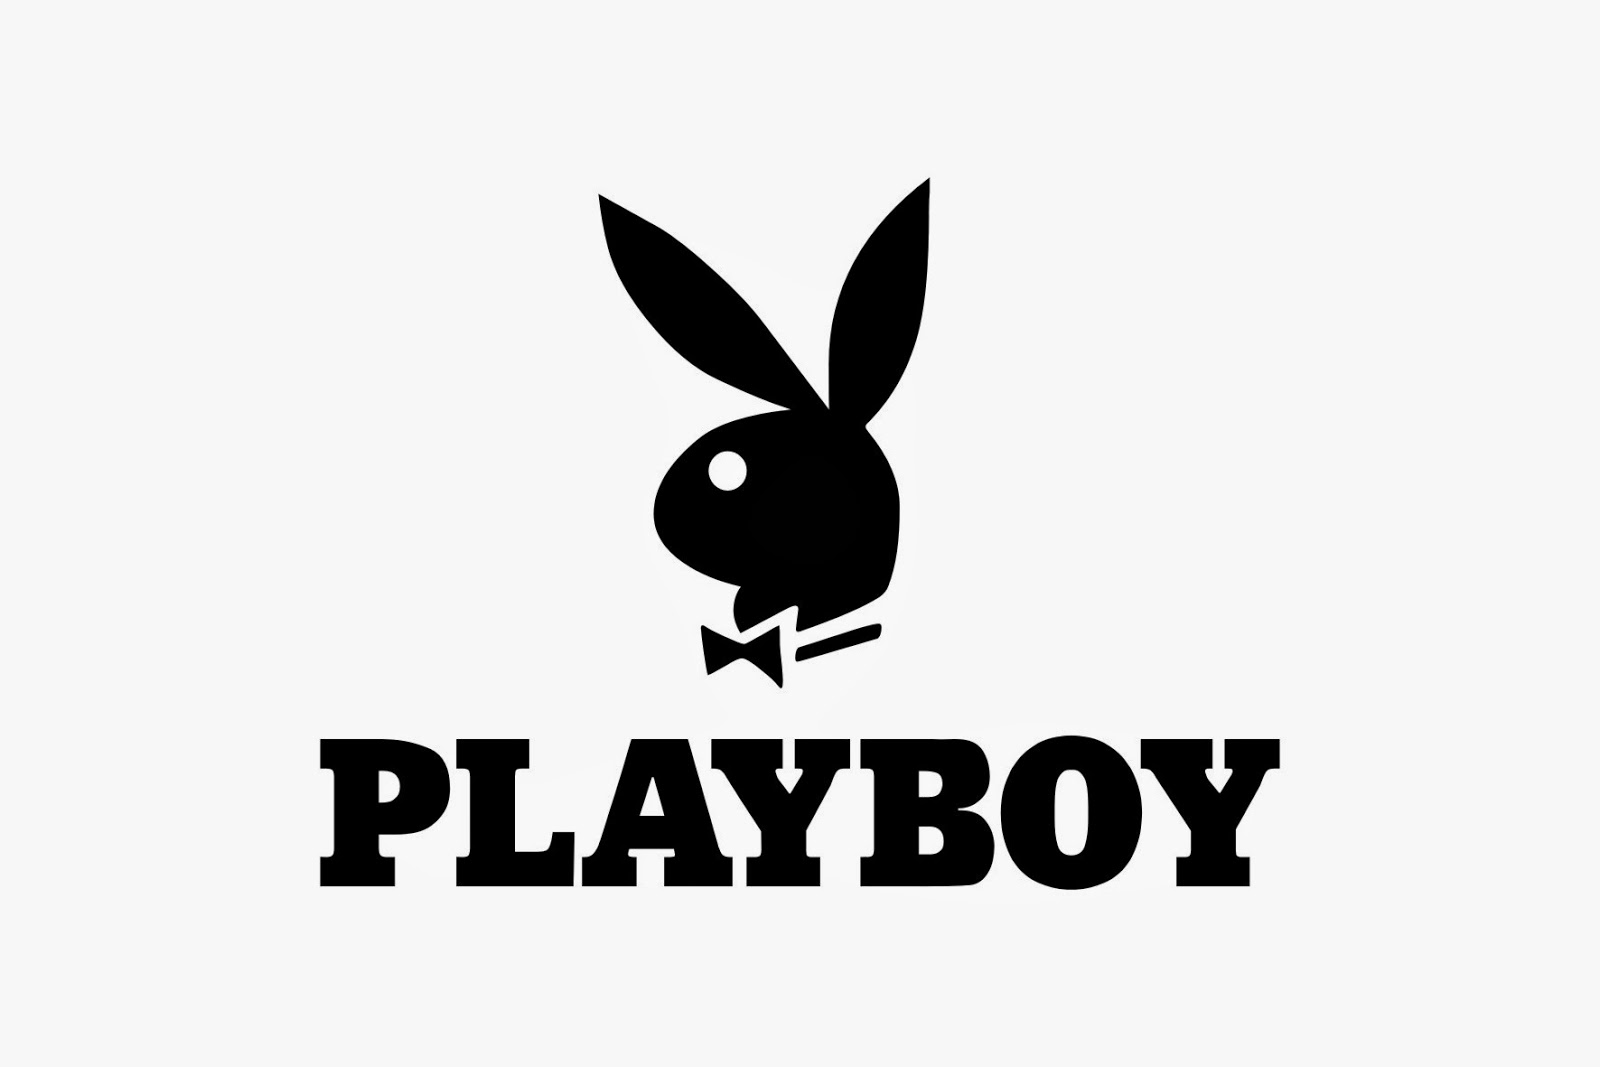 Playboy задумались над расширением бизнесса